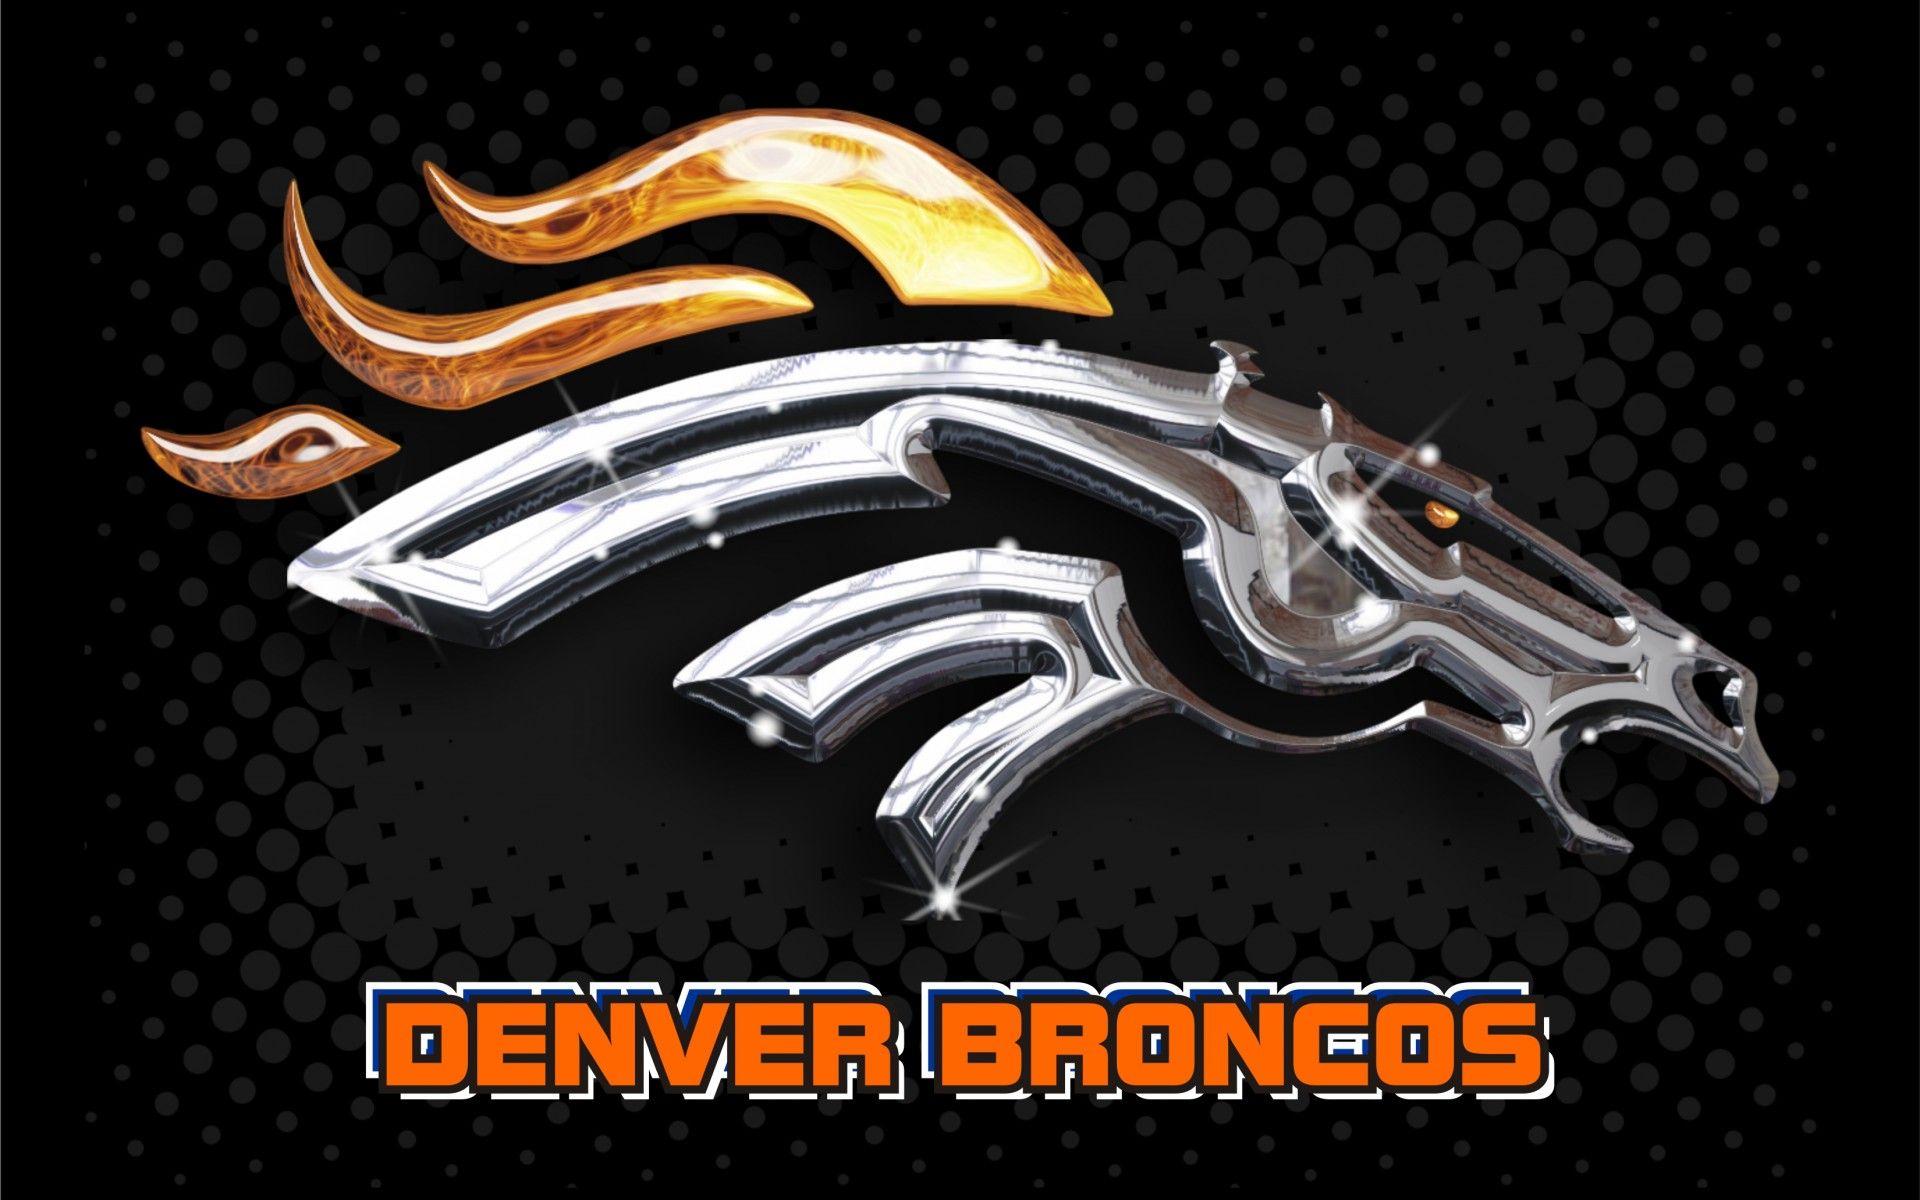 Denver Broncos Background 20 HD Wallpaper Free